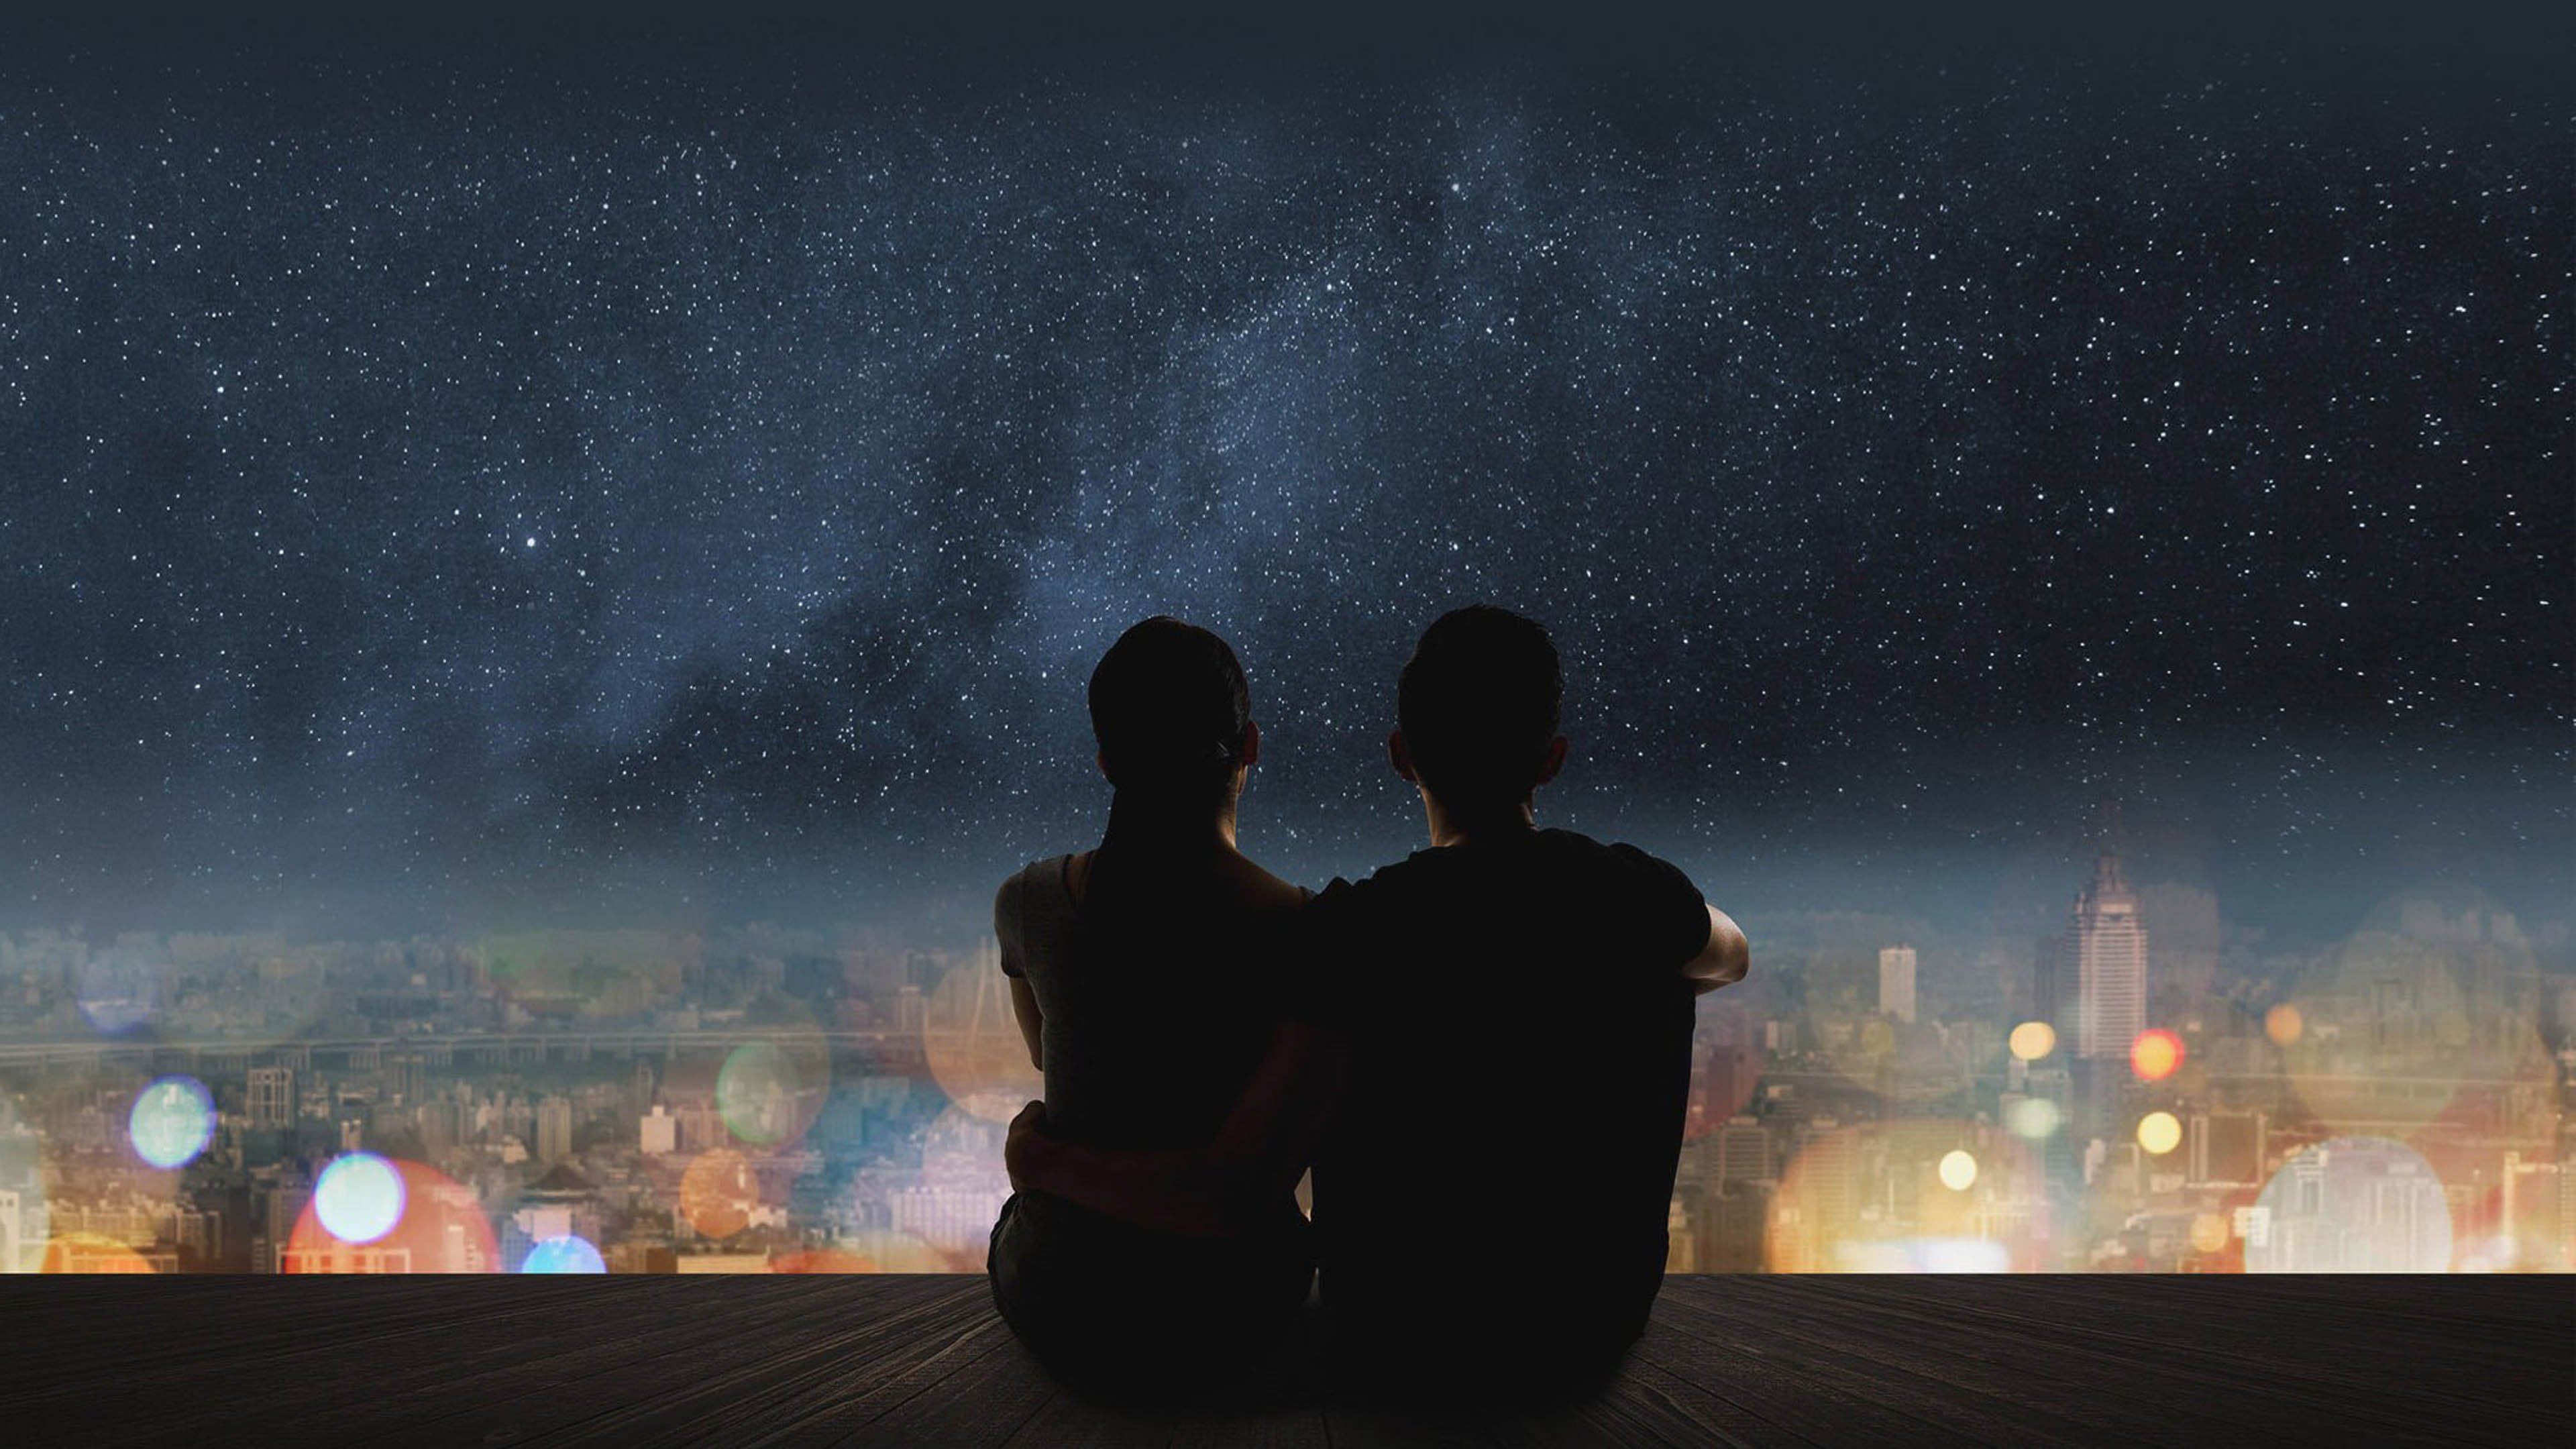 Слушать песню я так люблю звездную. Пара на фоне ночного неба. Звездное небо и влюбленные. Пара на фоне ночи. Пара на фоне звездного неба.